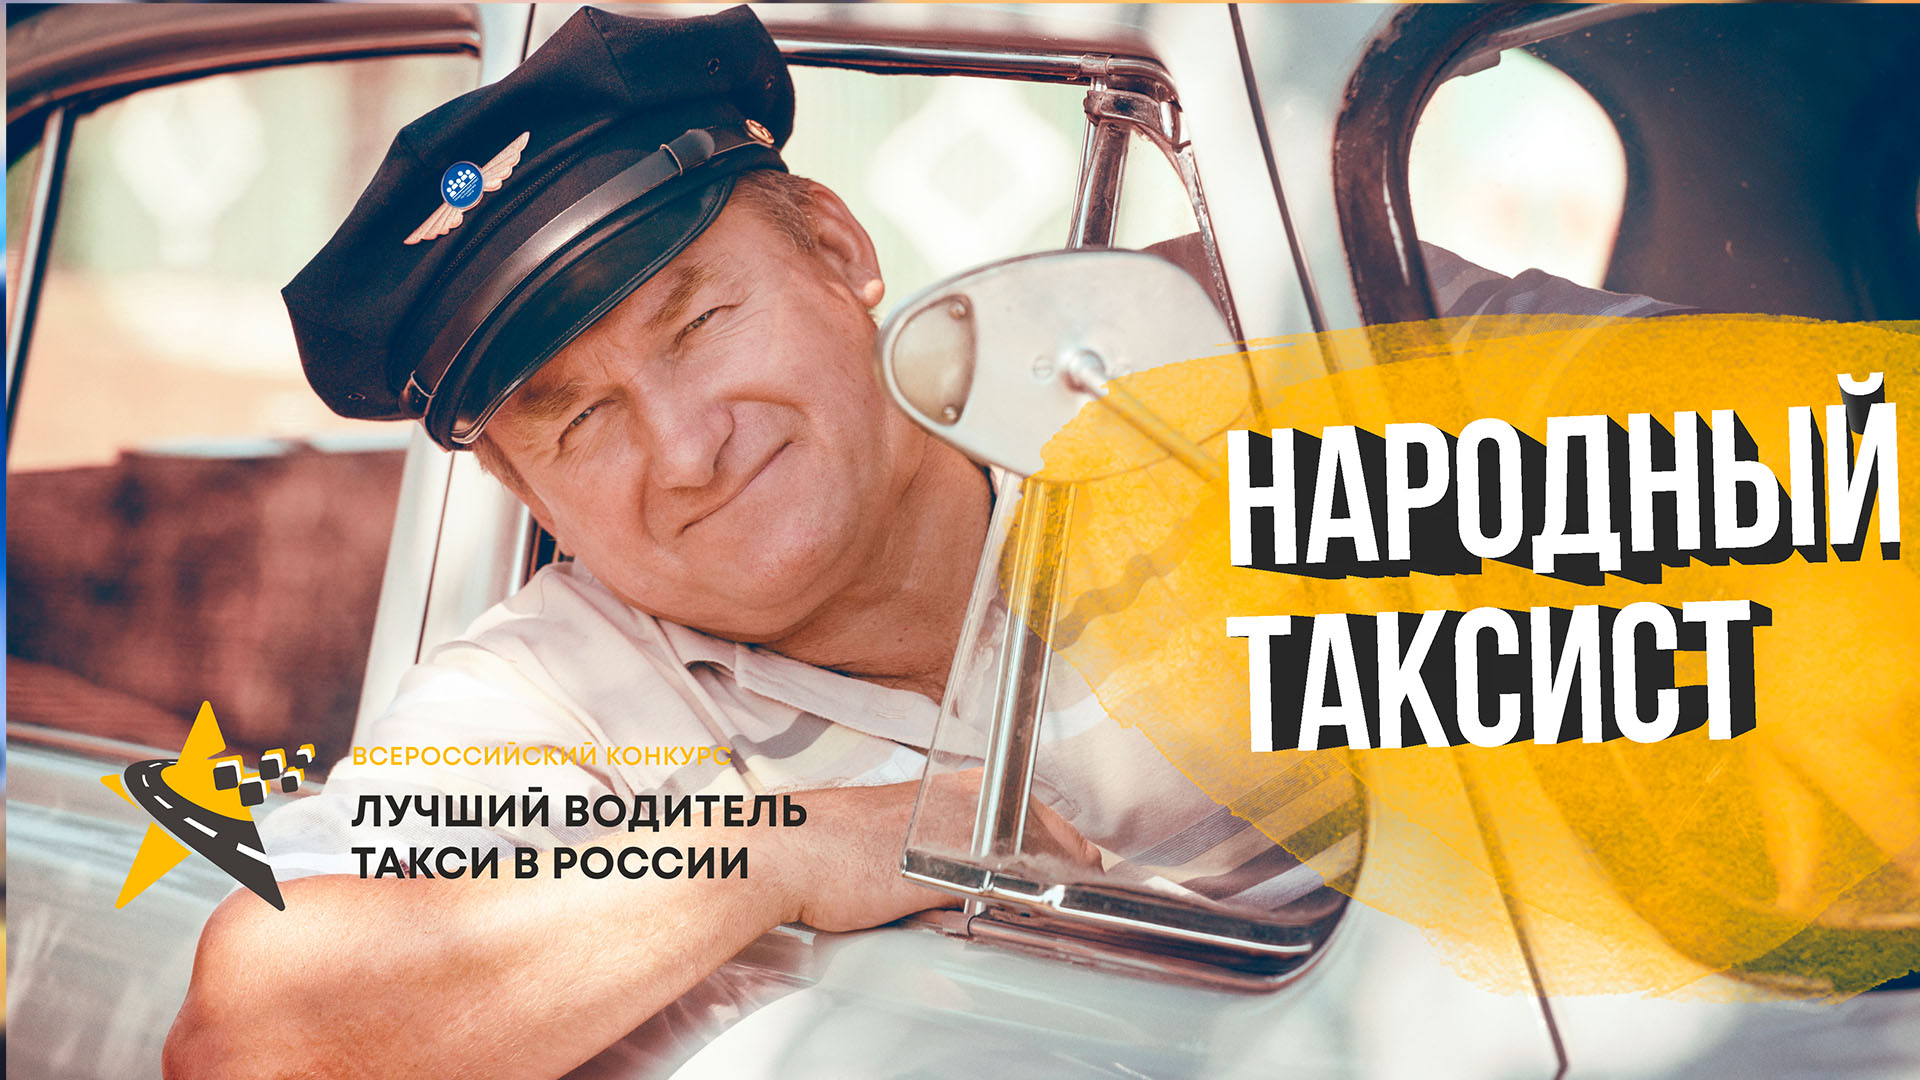 Голосуй за народного таксиста и получай призы!